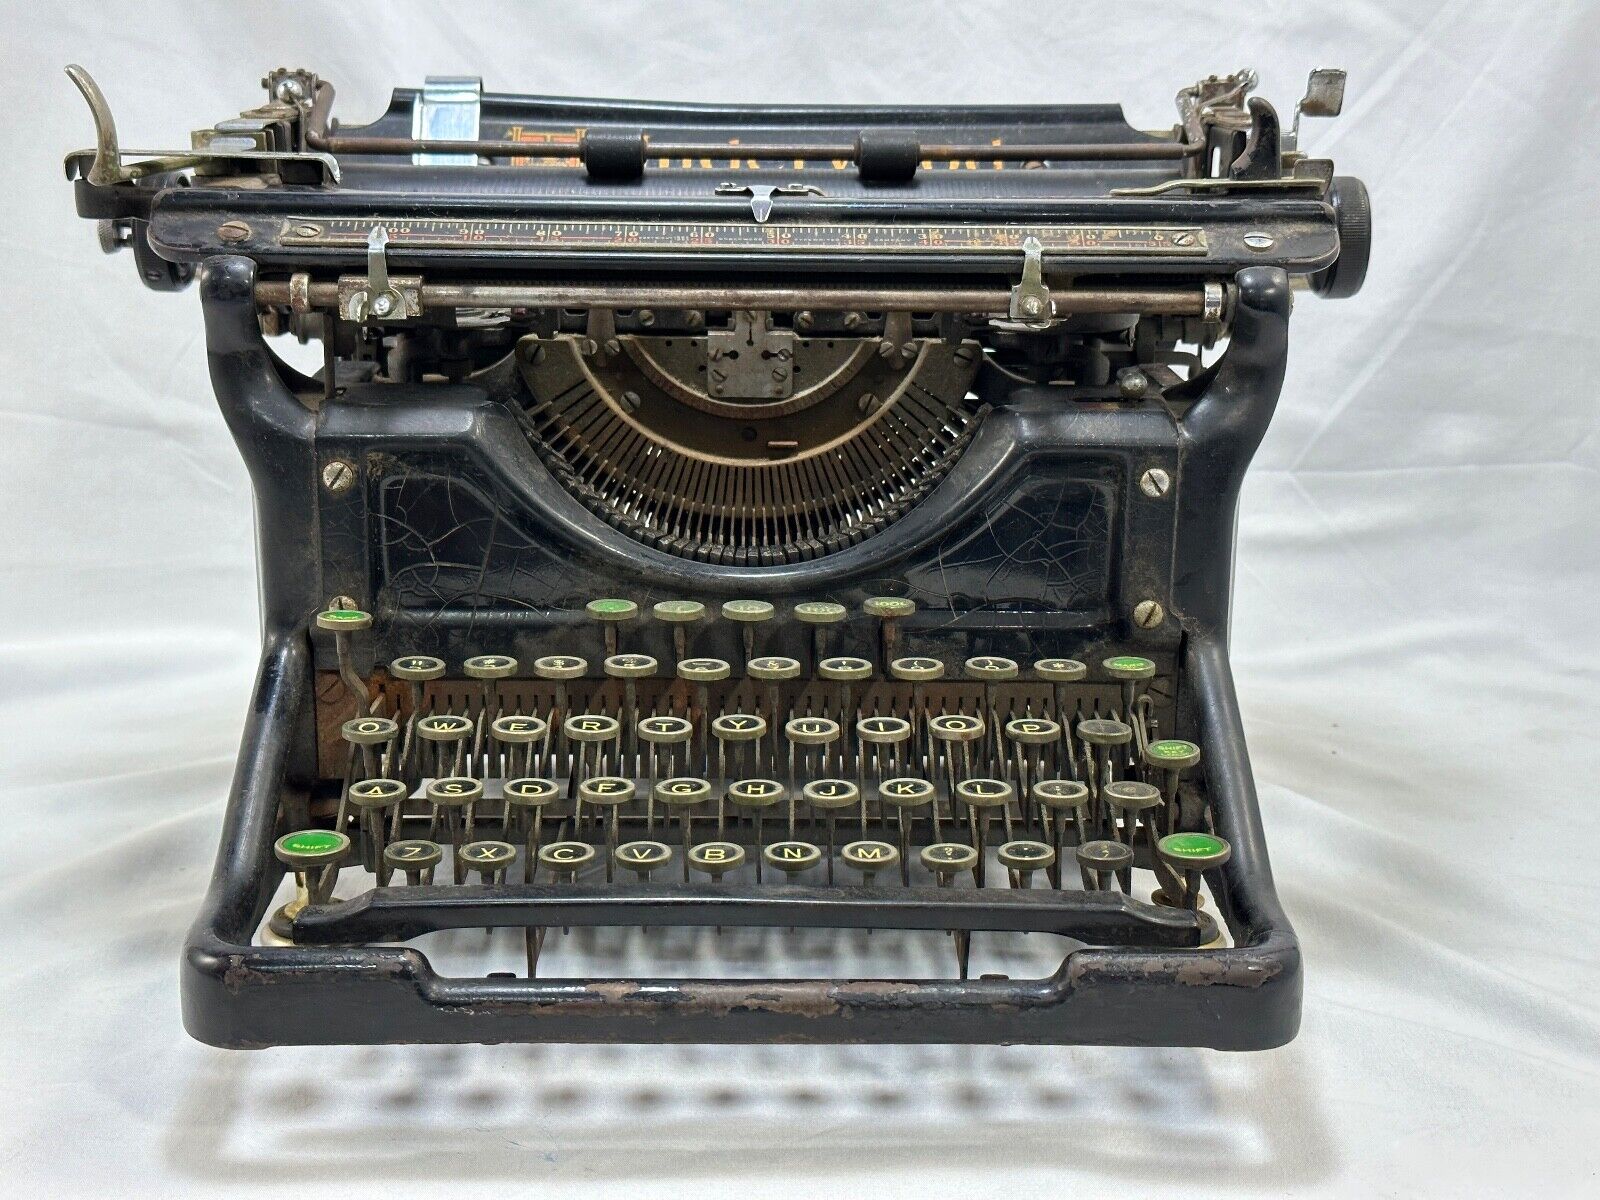 1934 Underwood Standard Typewriter 6-11  No. 4246280-11 Open Frame Needs Tuneup